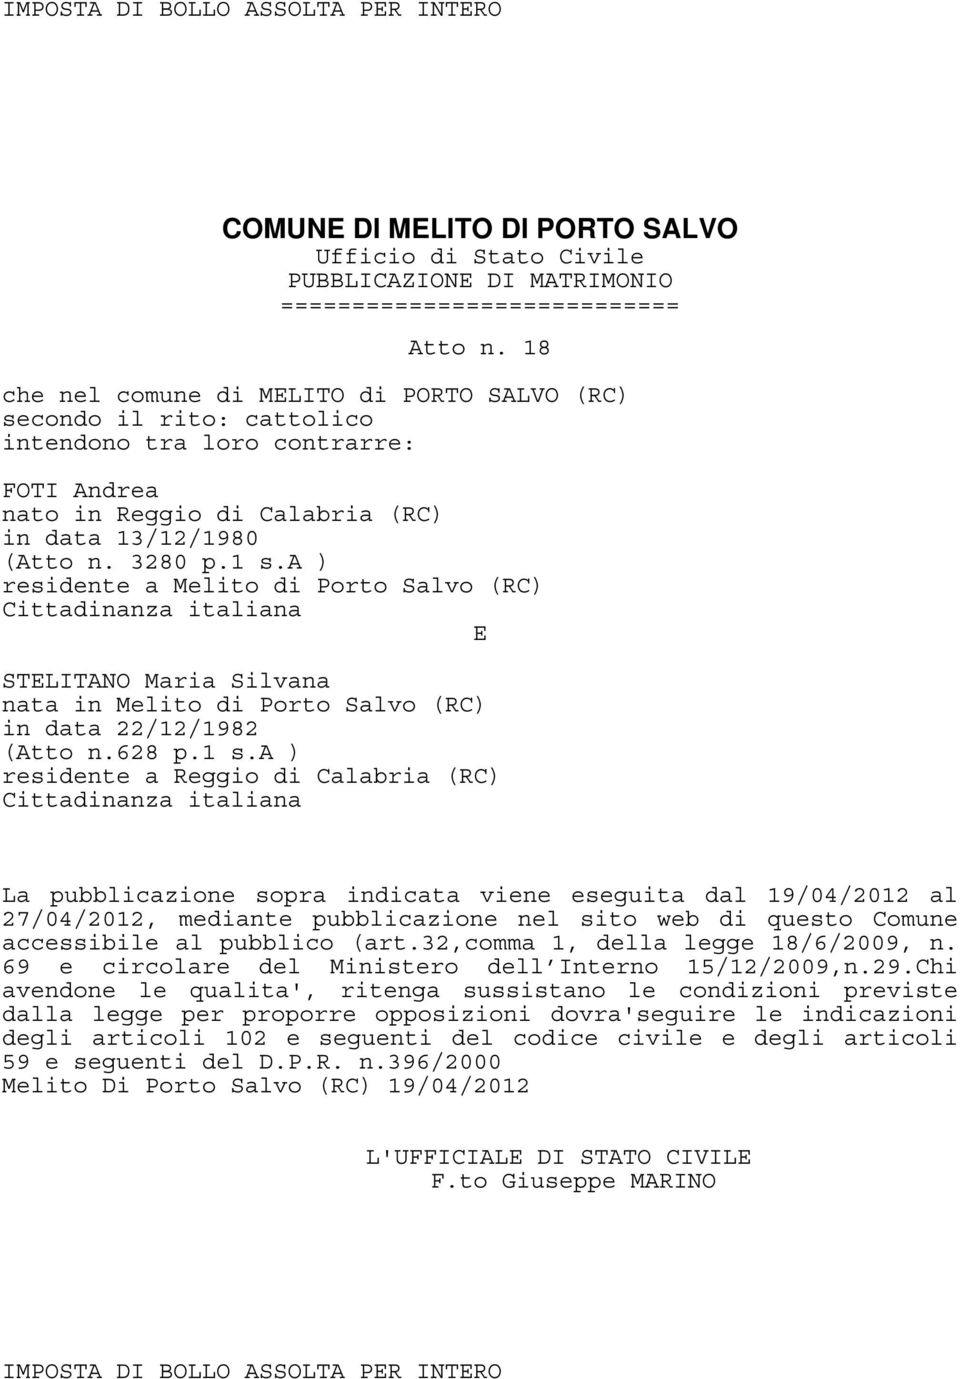 a ) STLITANO Maria Silvana in data 22/12/1982 (Atto n.628 p.1 s.